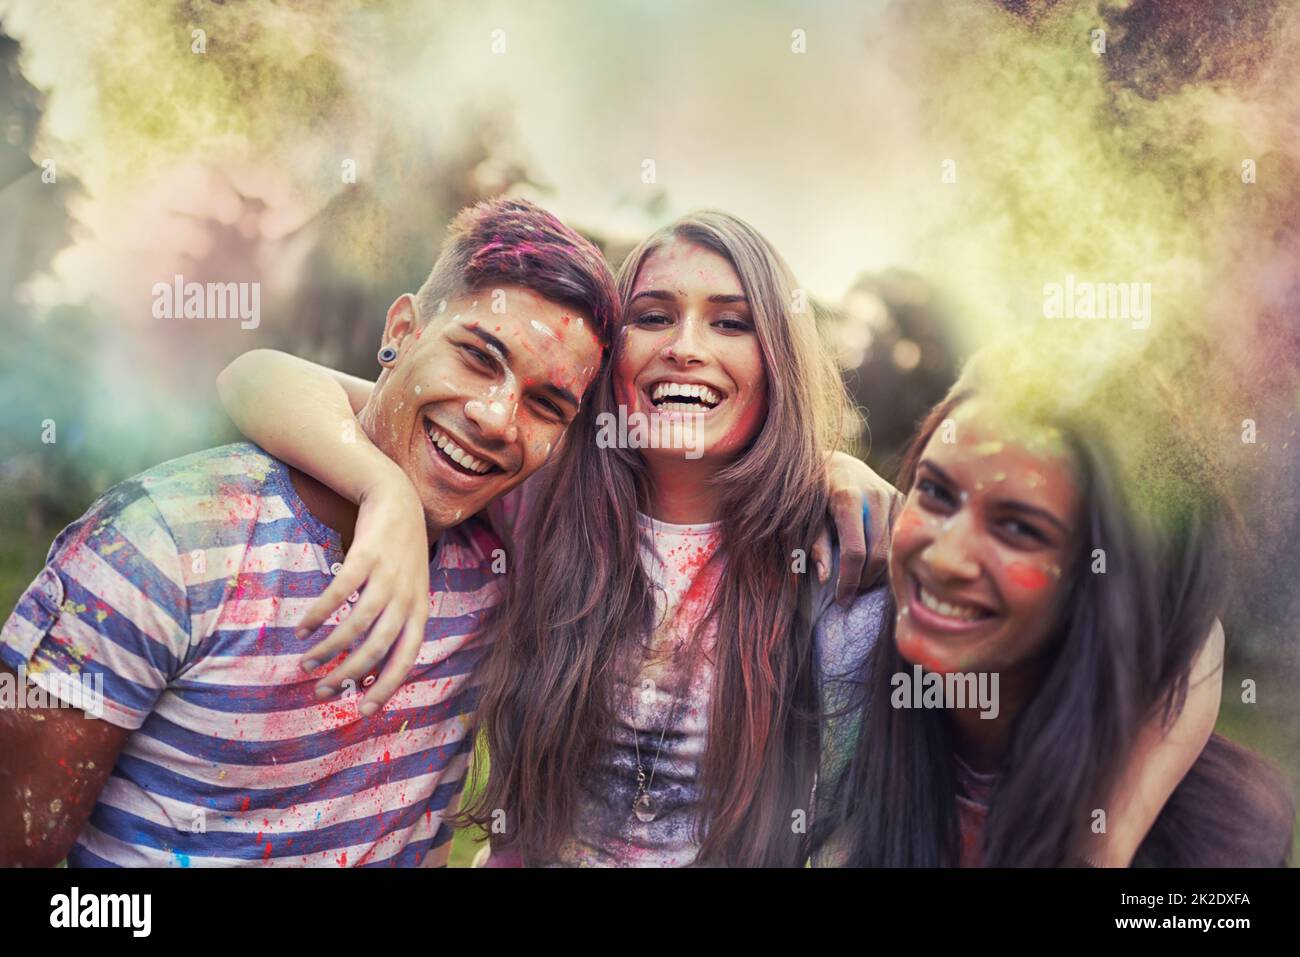 Regenbogen-Verfolger. Aufnahme von glücklichen Freunden, die Spaß mit Pulverfarbe haben. Stockfoto